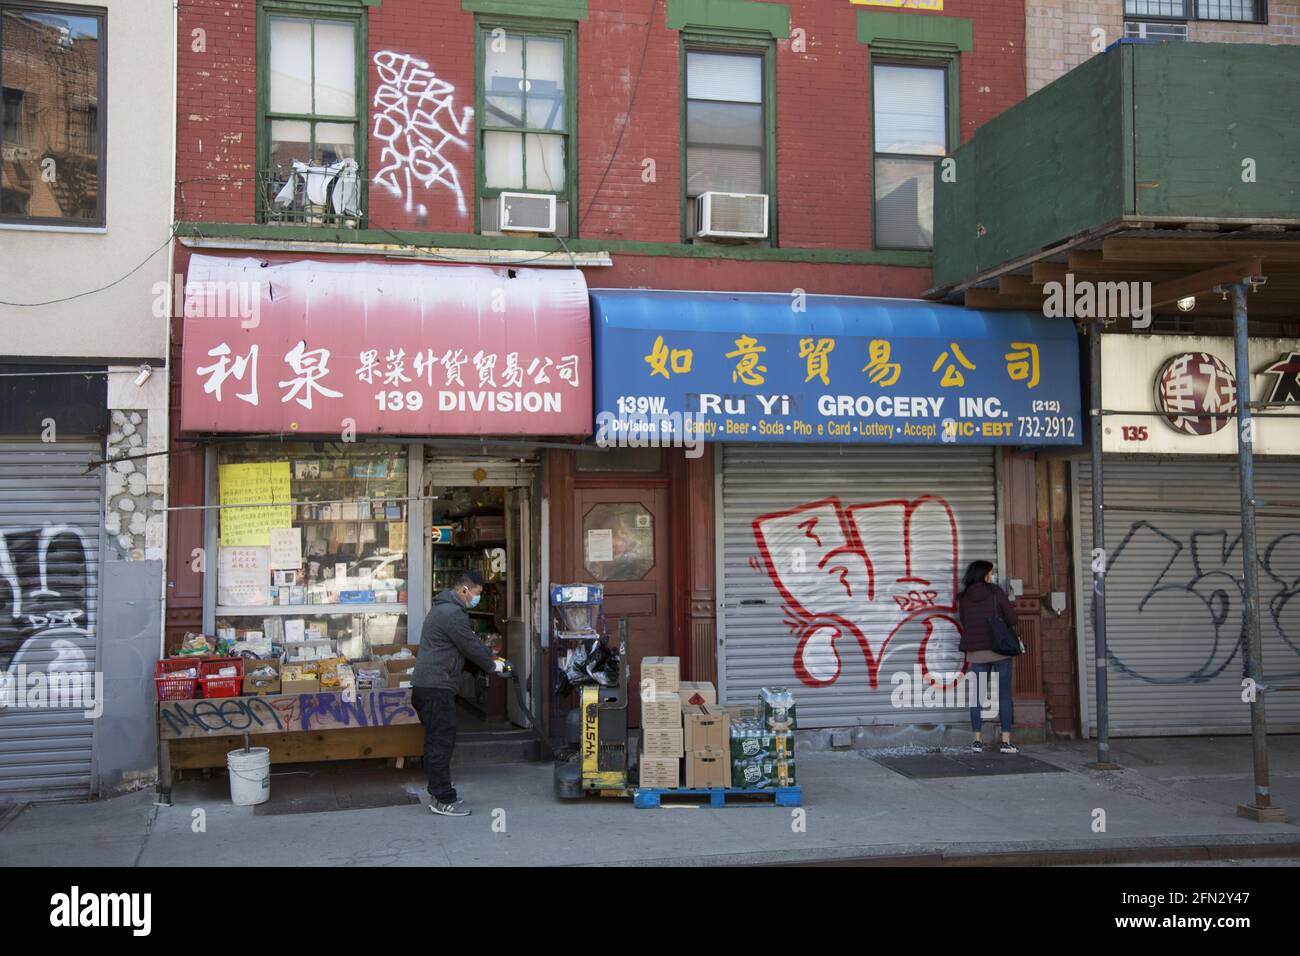 Open store in Chinatown Manhattan New York USA November 2004 Stock Photo -  Alamy